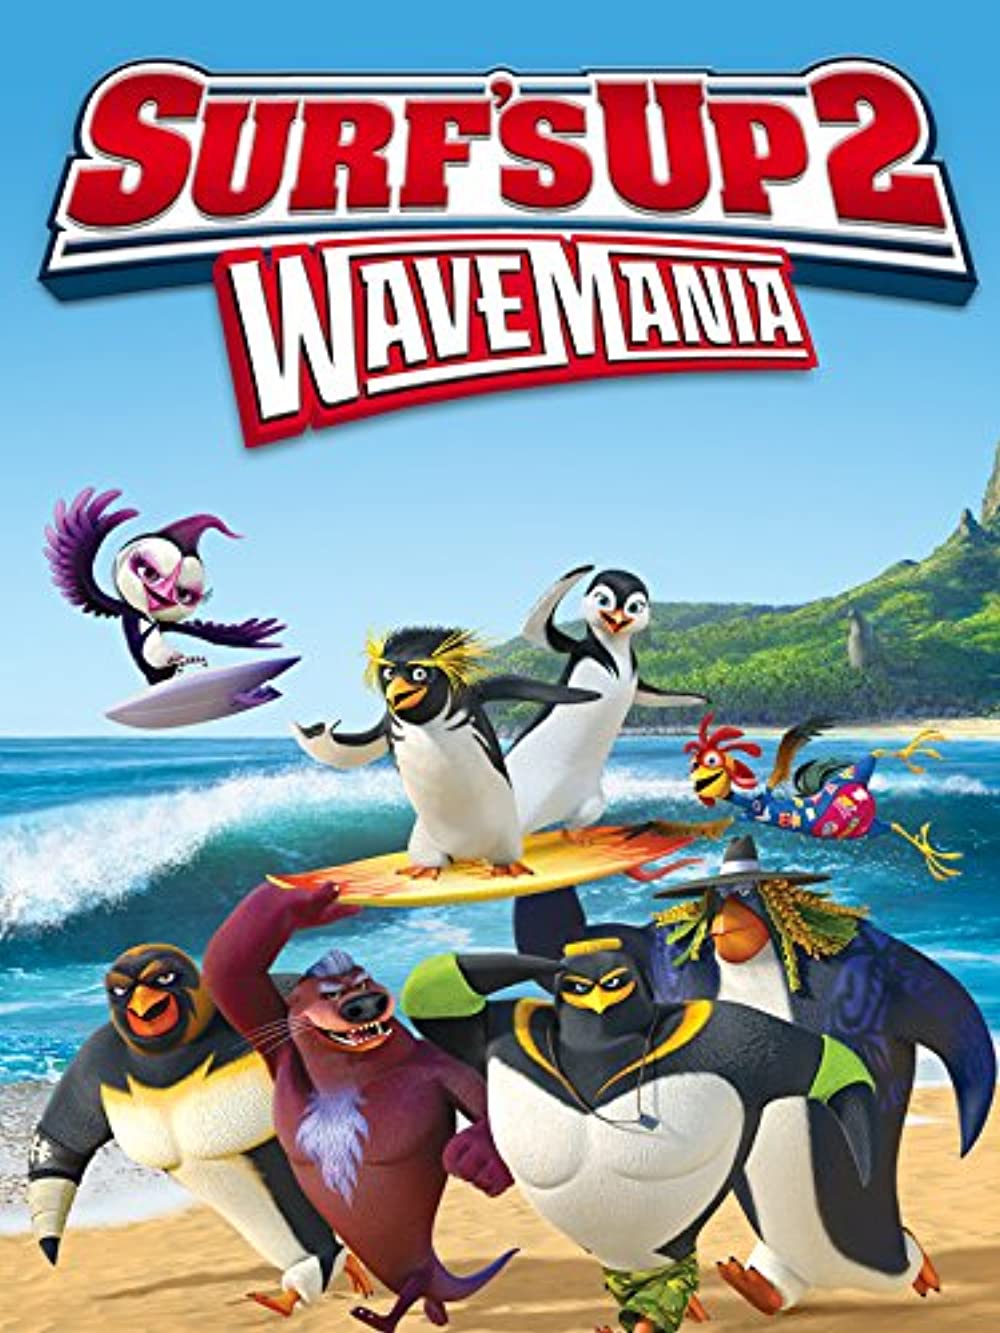 ดูหนังออนไลน์ฟรี SURF S UP 2 WAVEMANIA (2017) เซิร์ฟอัพ ไต่คลื่นยักษ์ซิ่งสะท้านโลก 2 หนังมาสเตอร์ หนังเต็มเรื่อง ดูหนังฟรีออนไลน์ ดูหนังออนไลน์ หนังออนไลน์ ดูหนังใหม่ หนังพากย์ไทย หนังซับไทย ดูฟรีHD